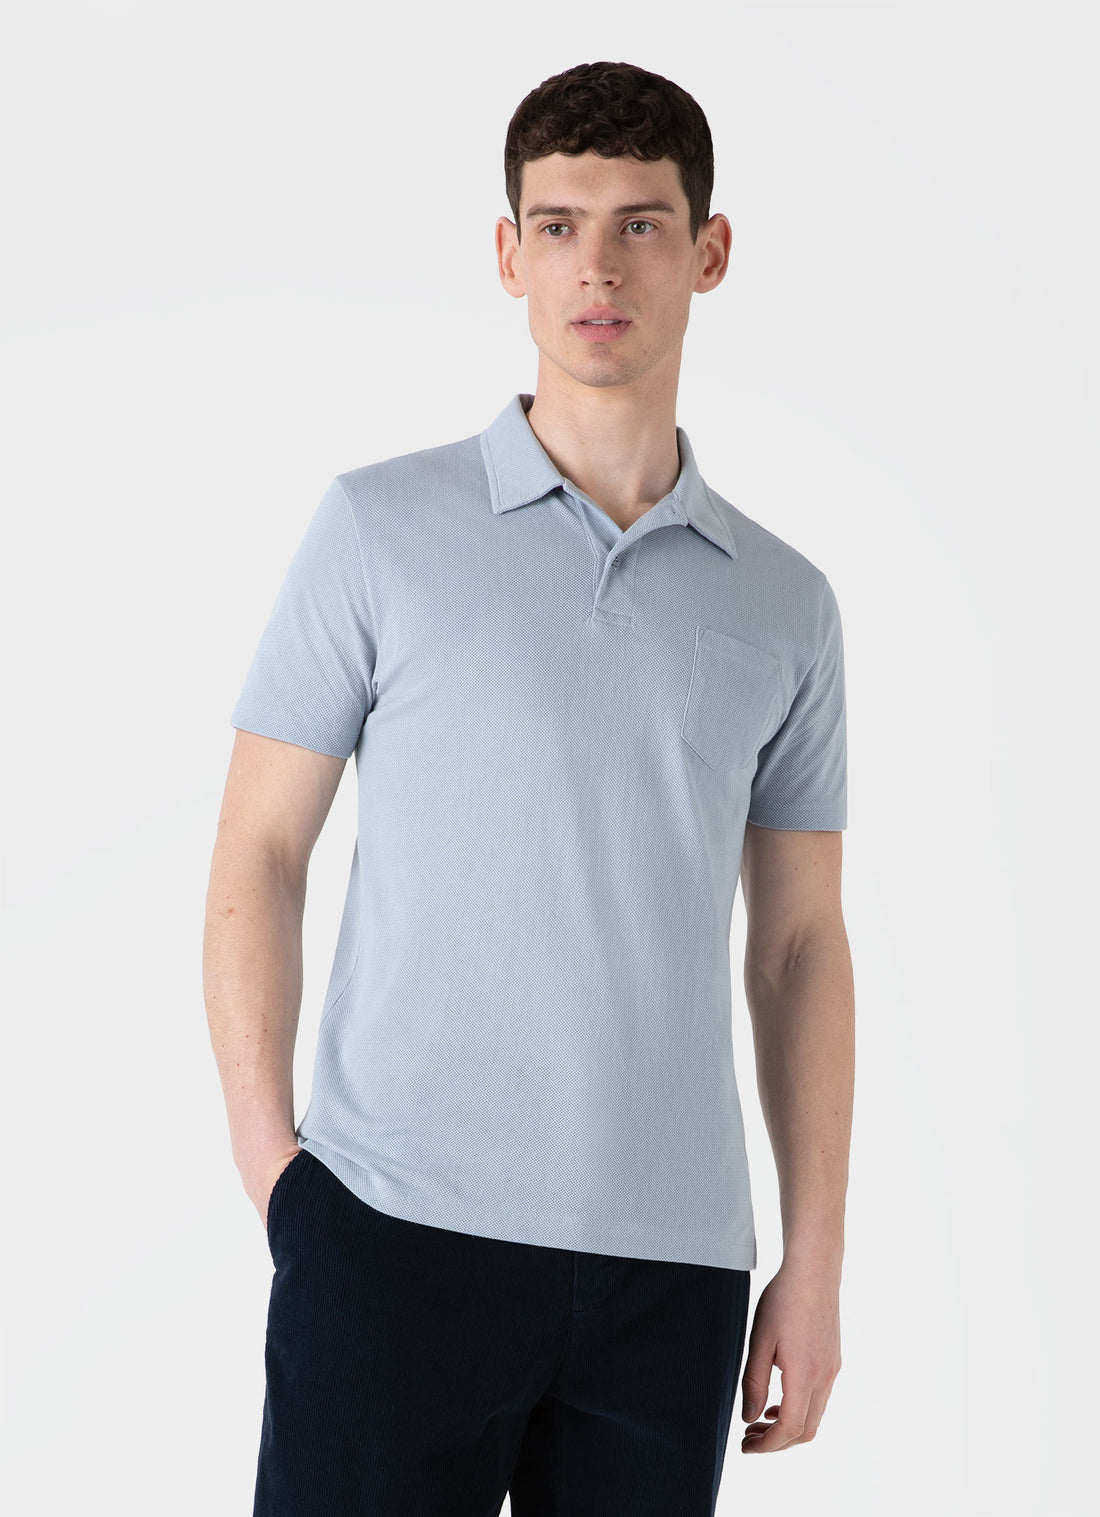 Men's Riviera Polo Shirt in Smoke Blue